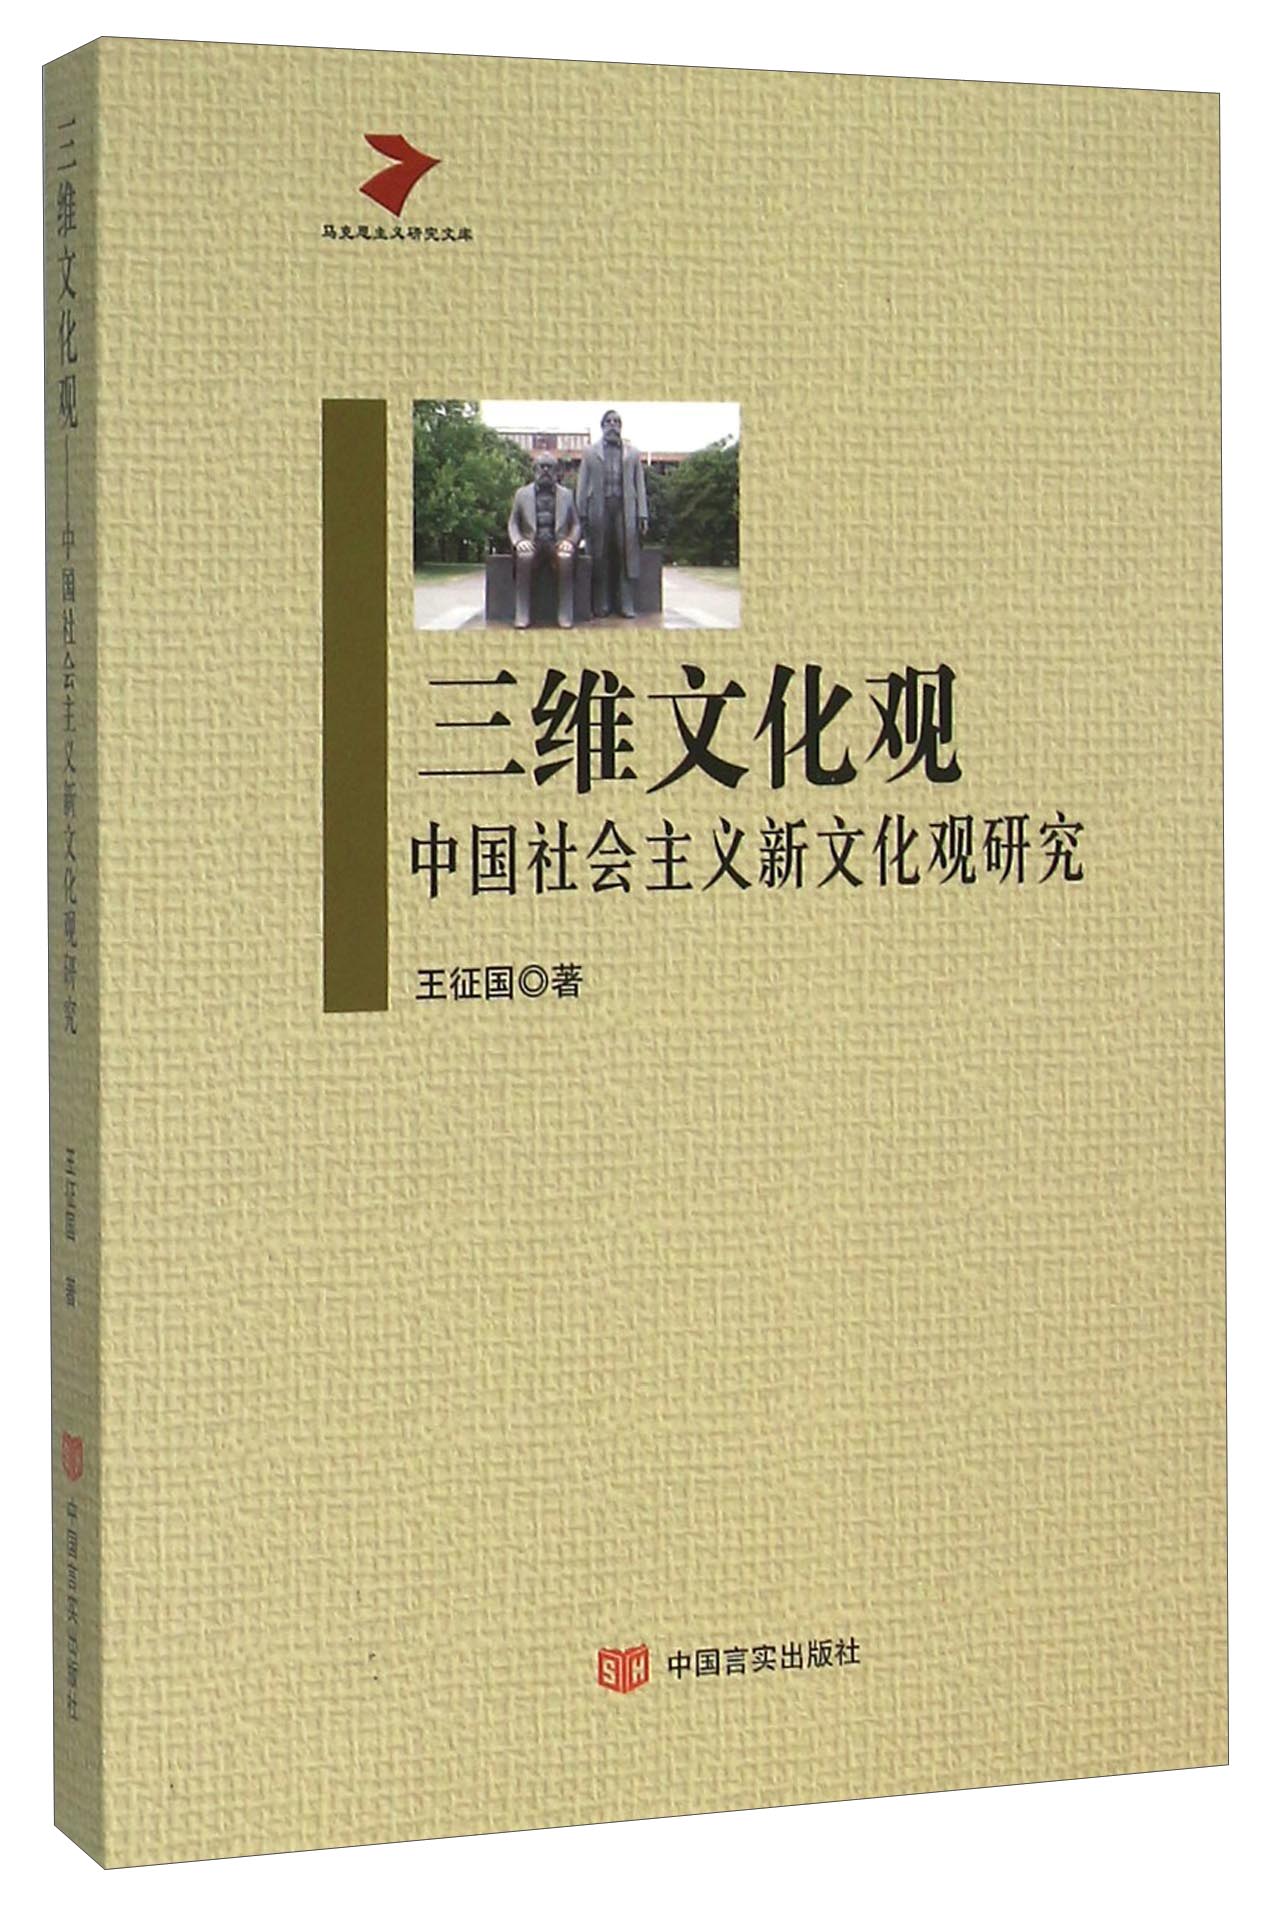 三维文化观 中国社会主义新文化观研究 mobi格式下载